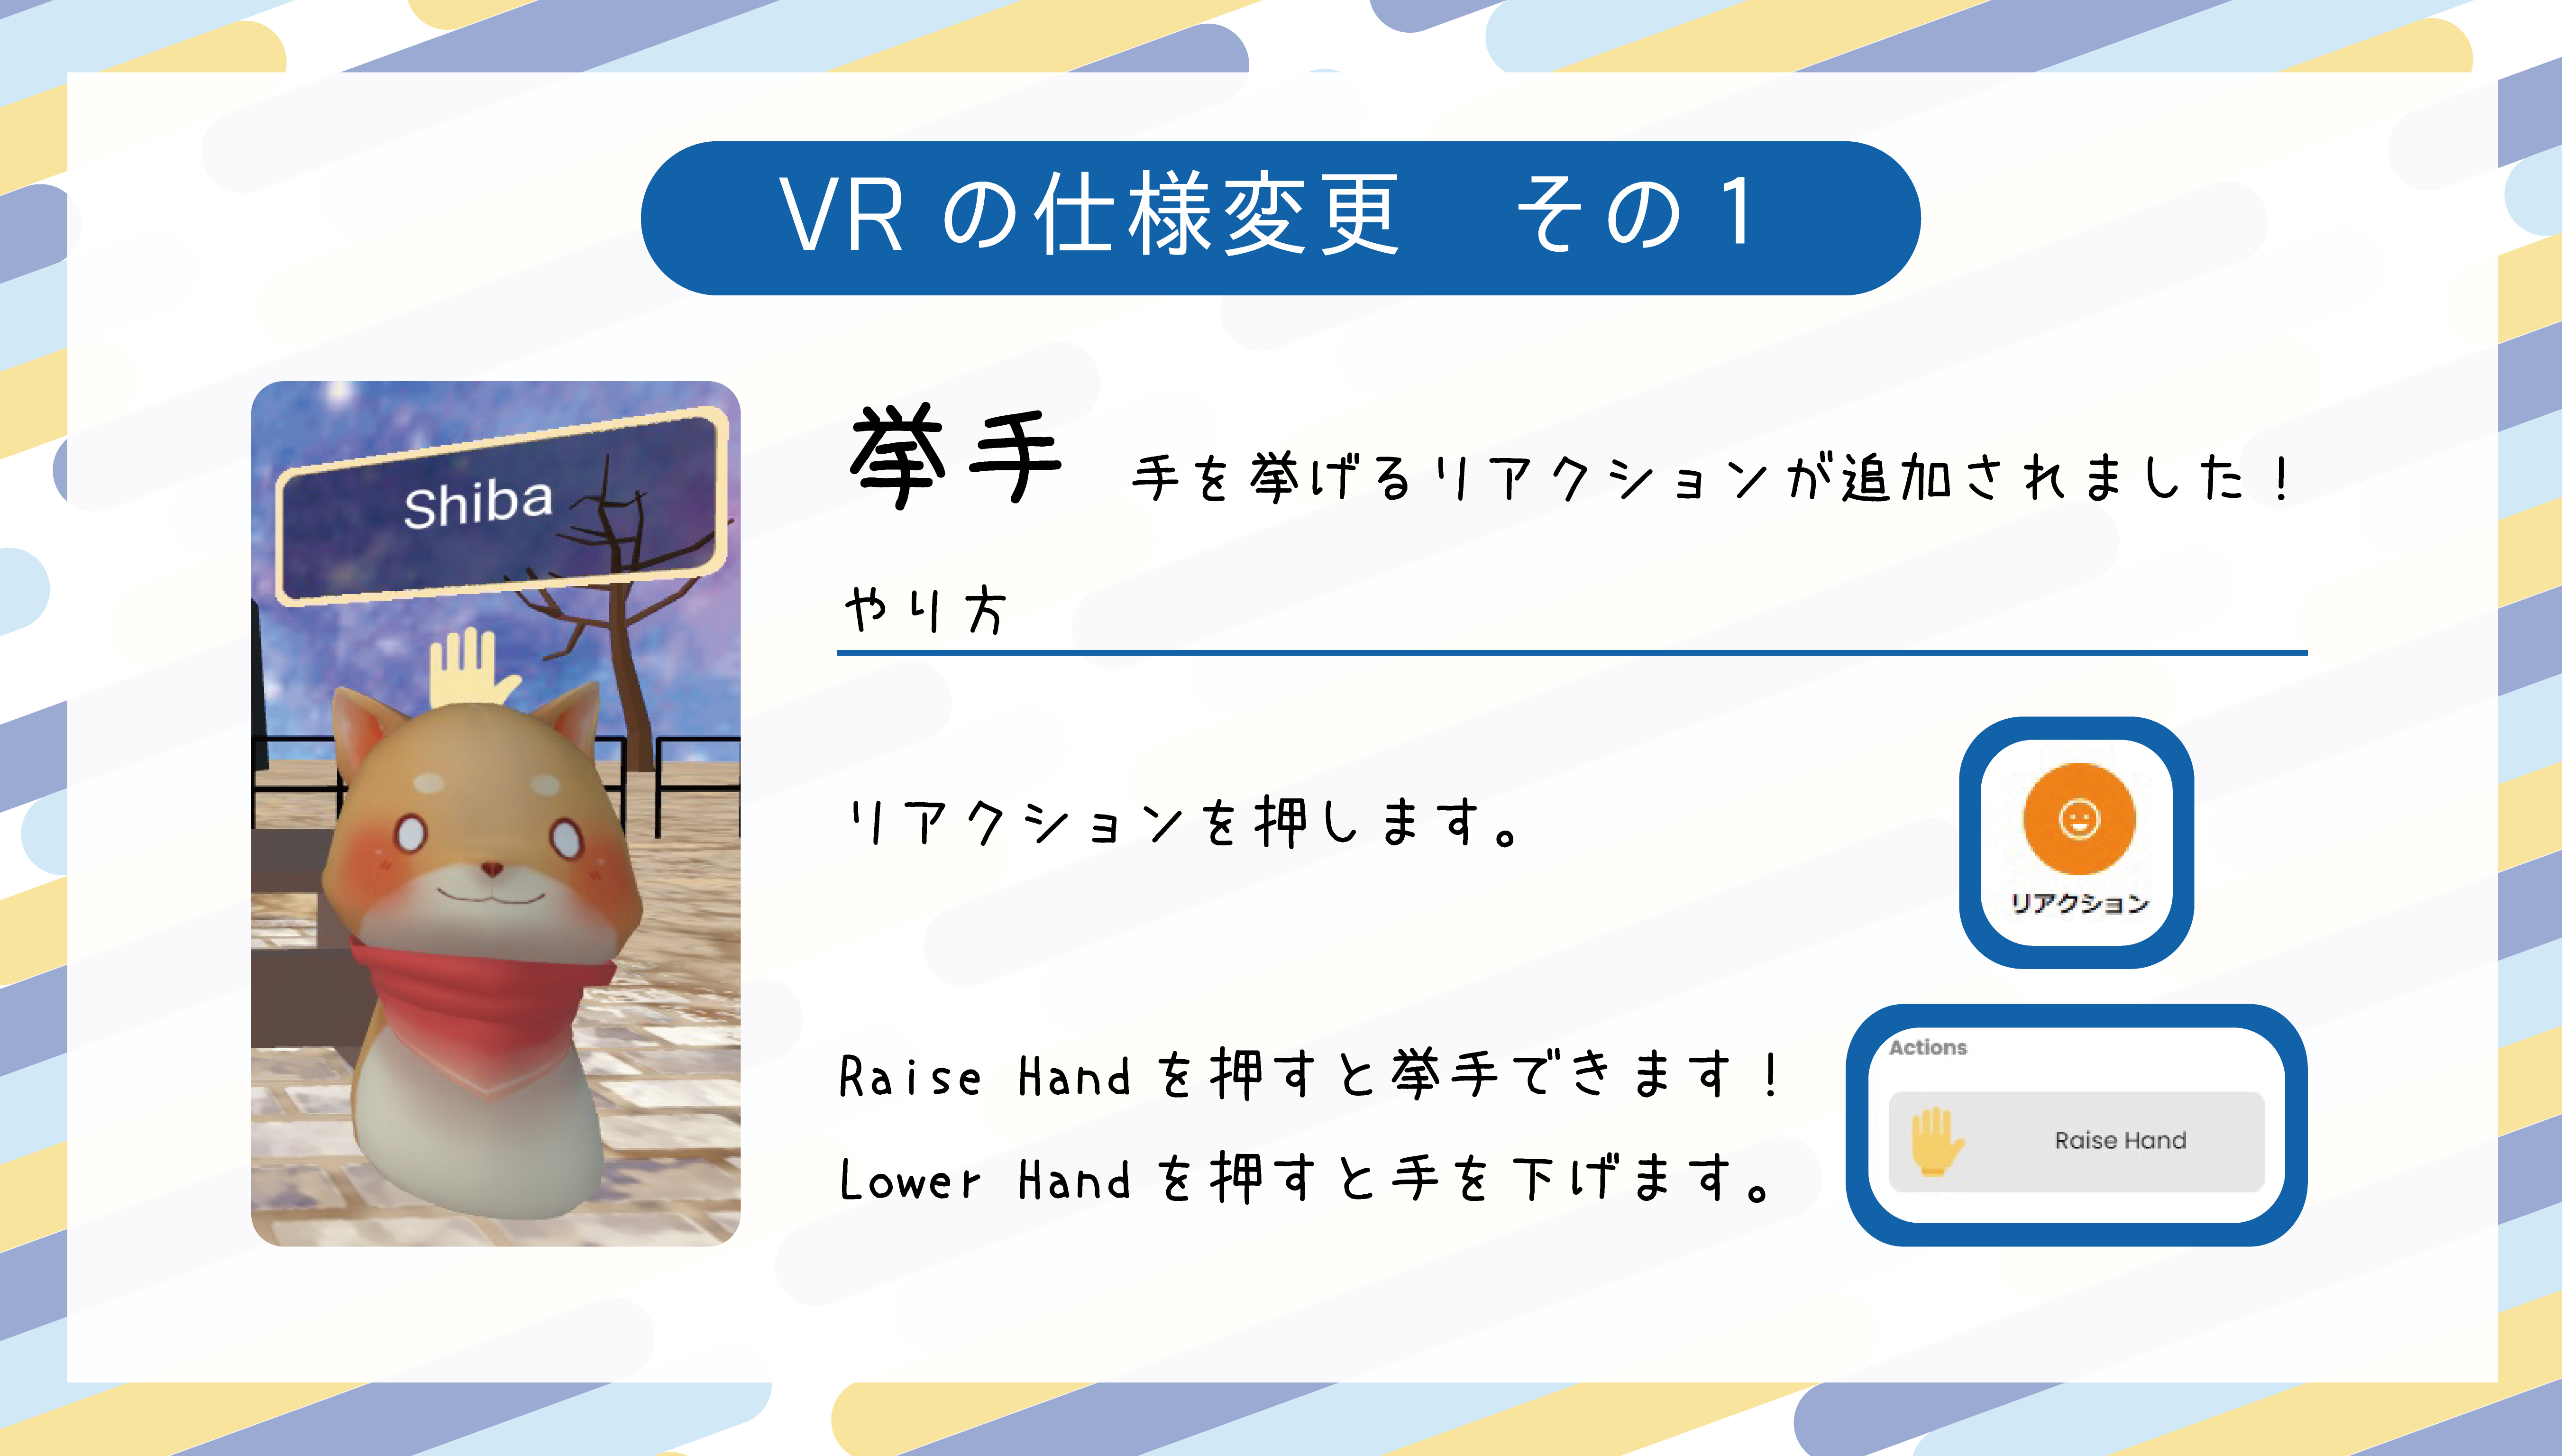 VR仕様変更のお知らせ-01